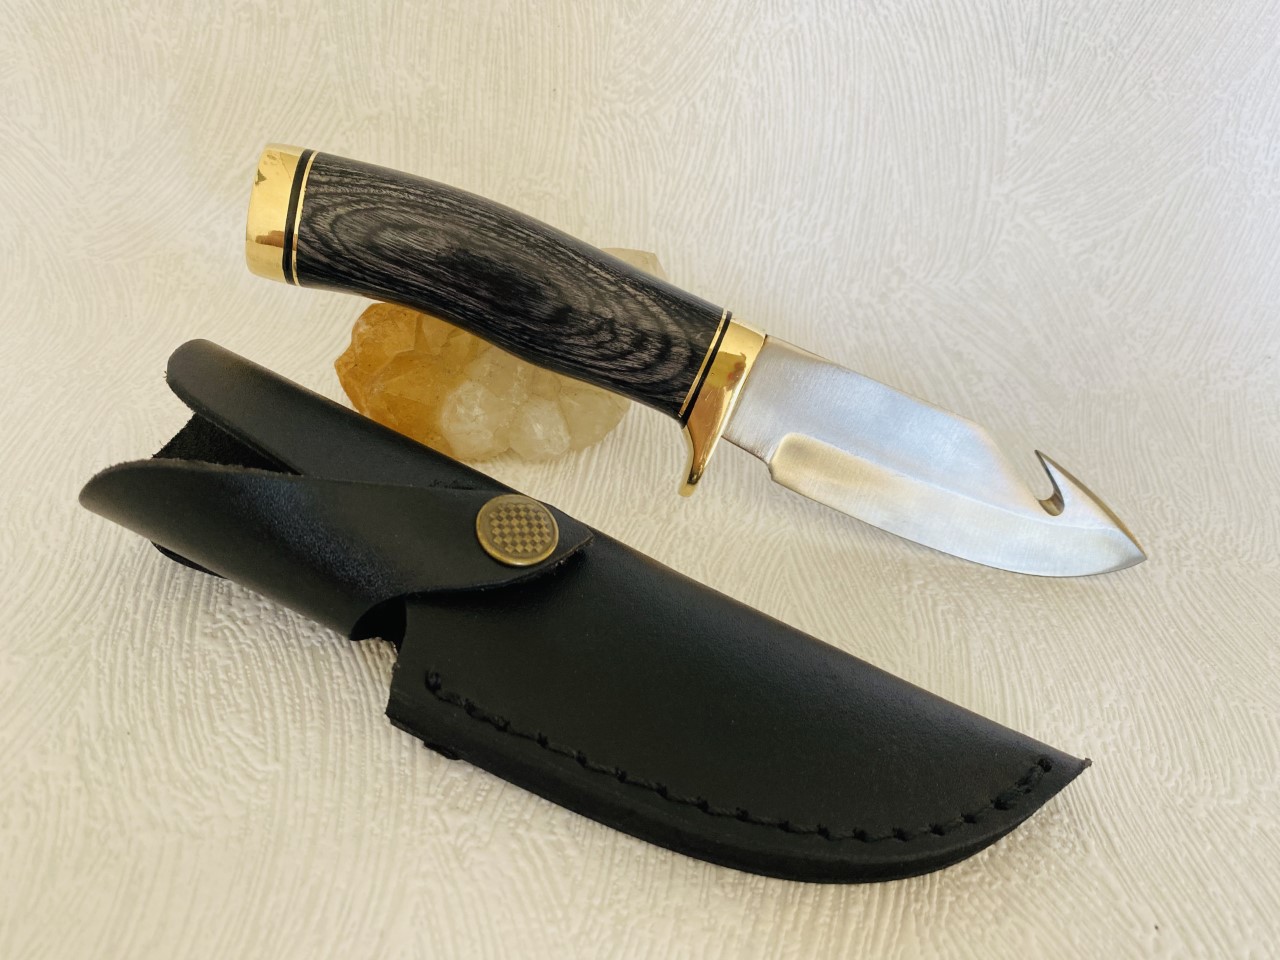 Couteau à dépecer de 22 cm avec son manche en bois coloré noir et son étui au prix de 24,90 euros .